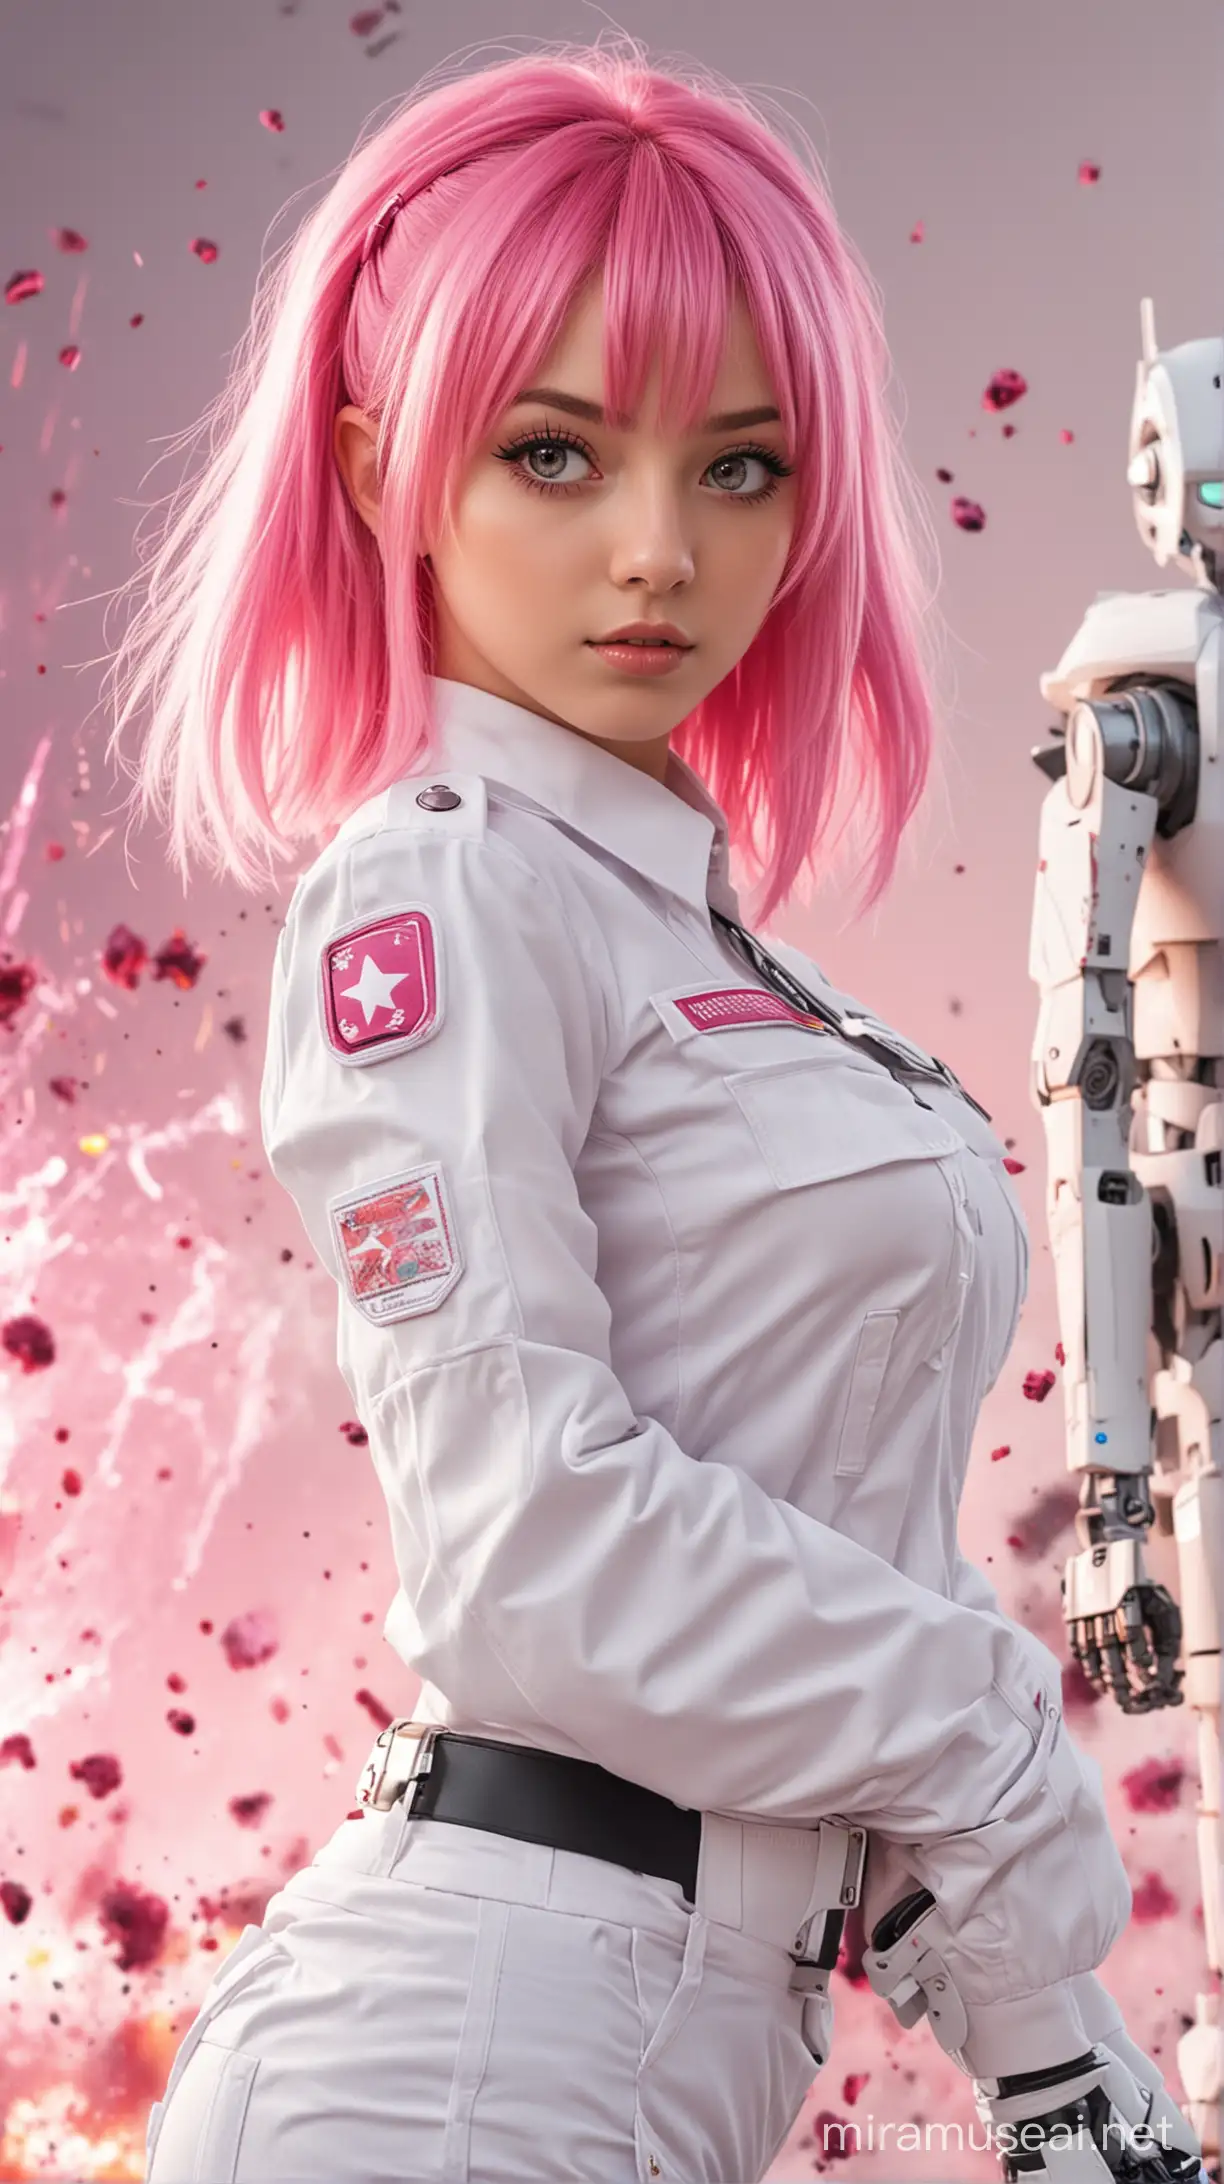 chica anime joven, 24 años, cabello rosa pastel, ojos fucsia, traje blanco de guardia de seguridad, con explosiones de robots atras.